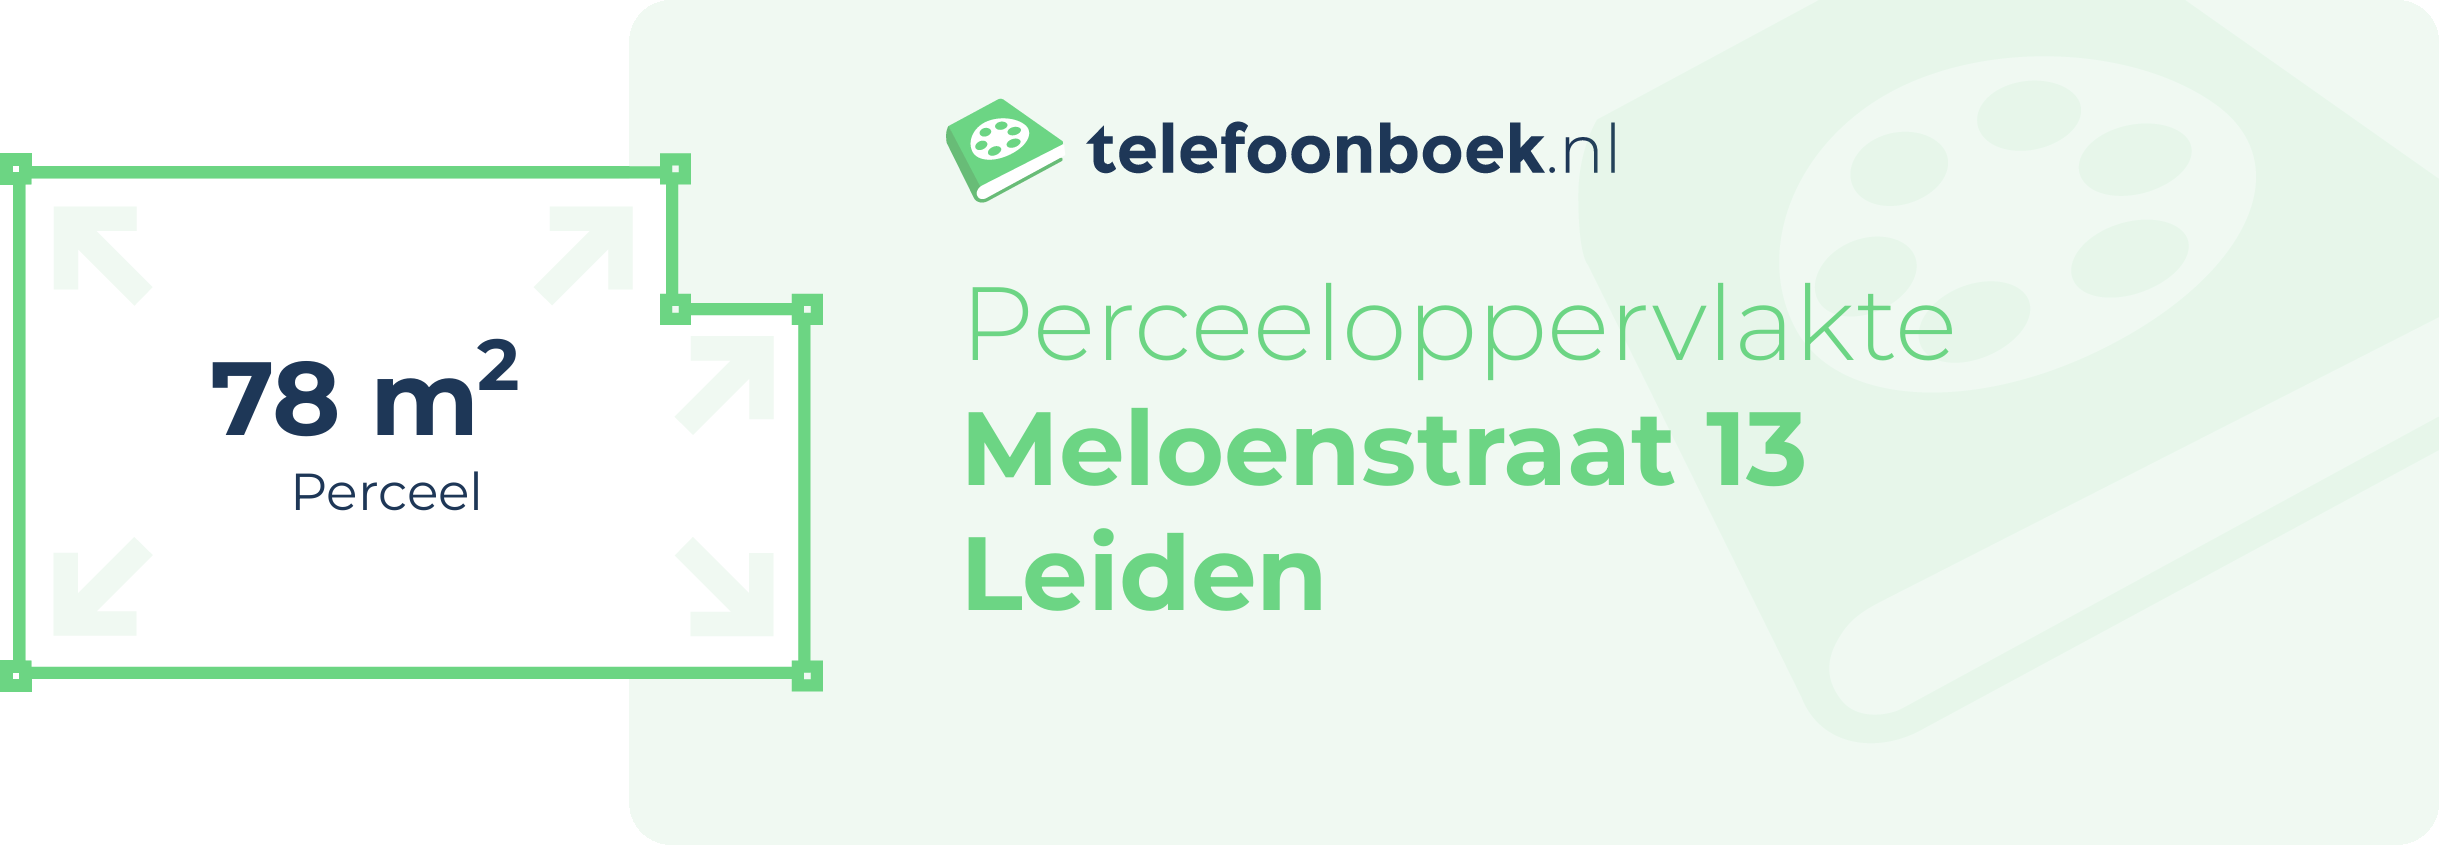 Perceeloppervlakte Meloenstraat 13 Leiden